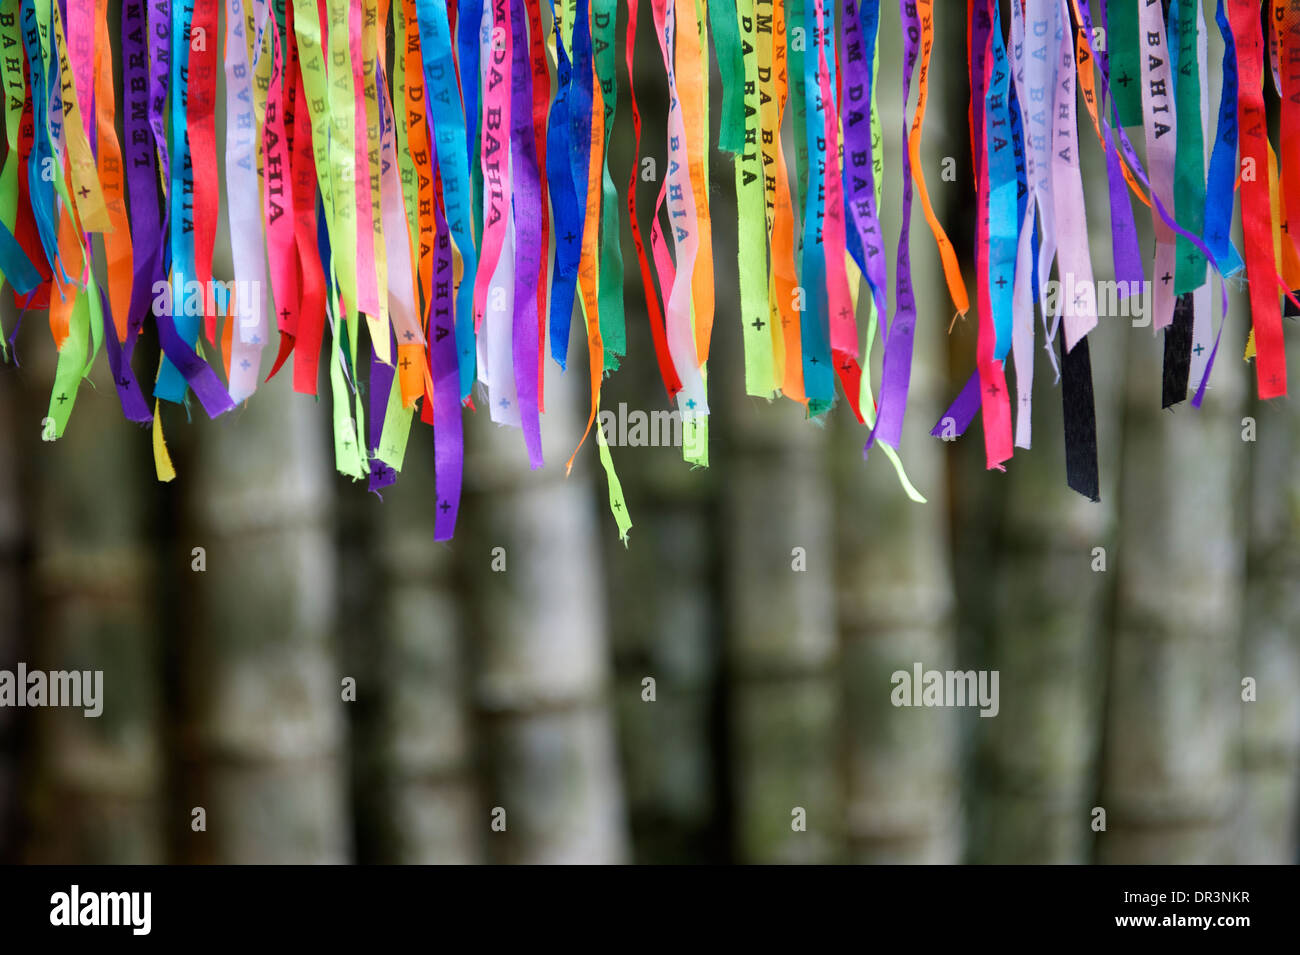 Carnaval brésilien coloré lembranca rubans souhaite contre forêt de bambou jungle background Banque D'Images